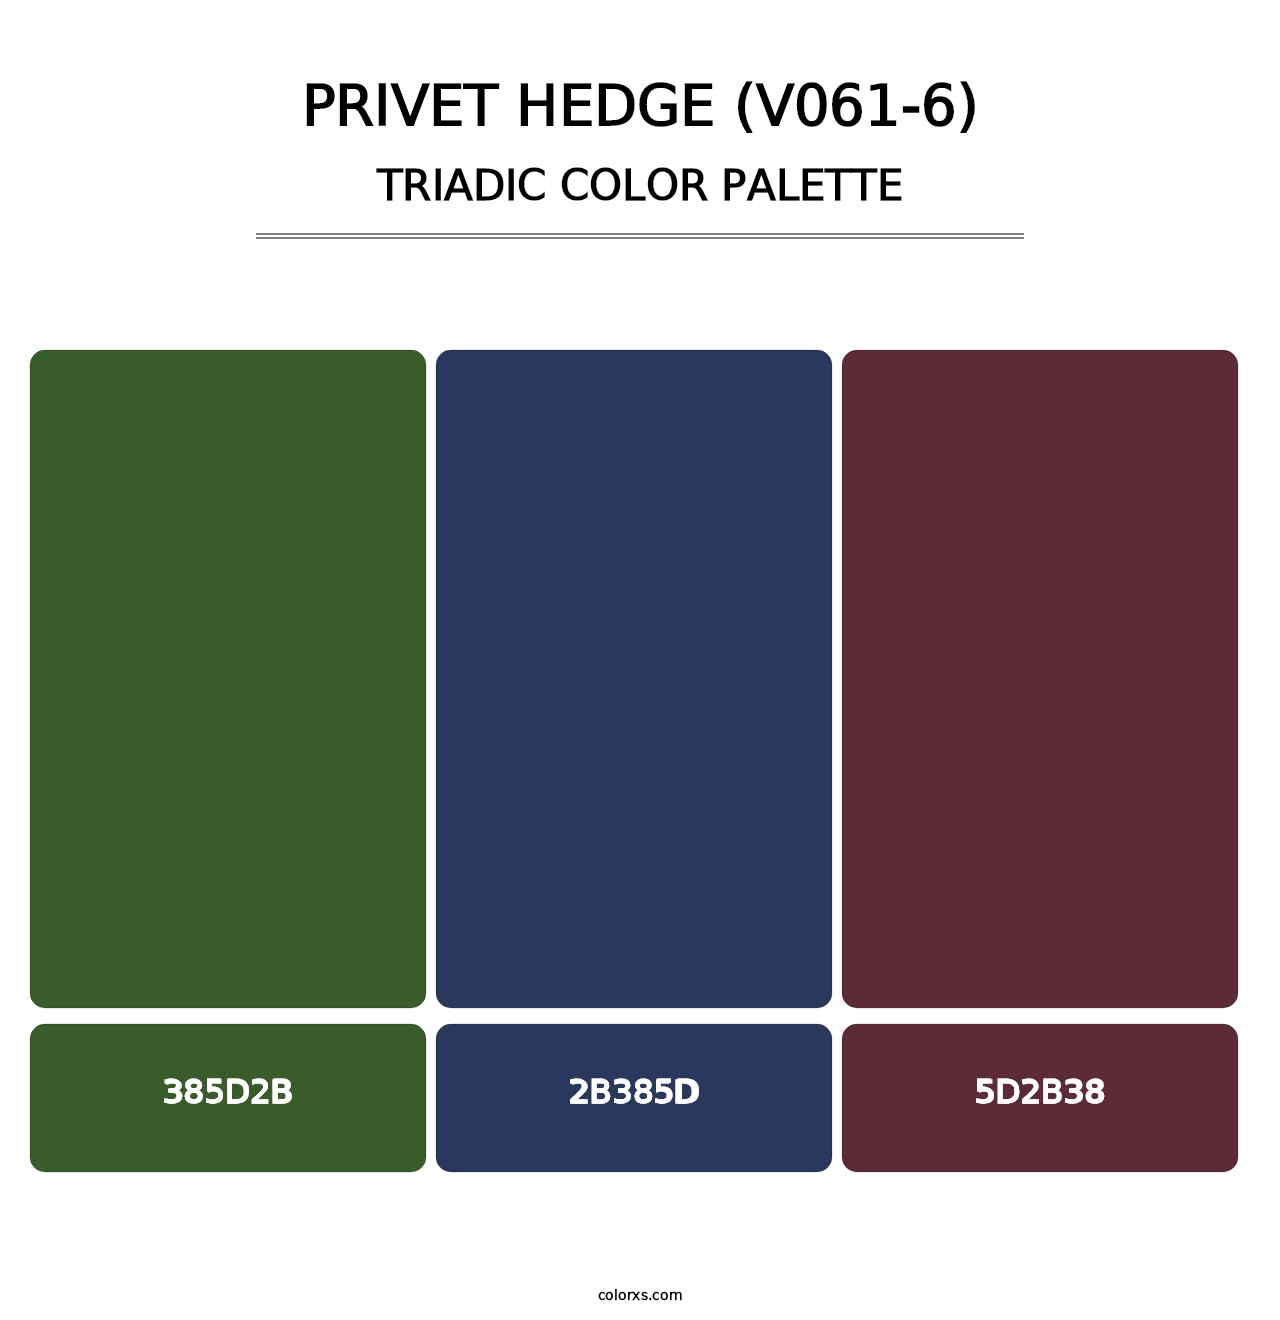 Privet Hedge (V061-6) - Triadic Color Palette